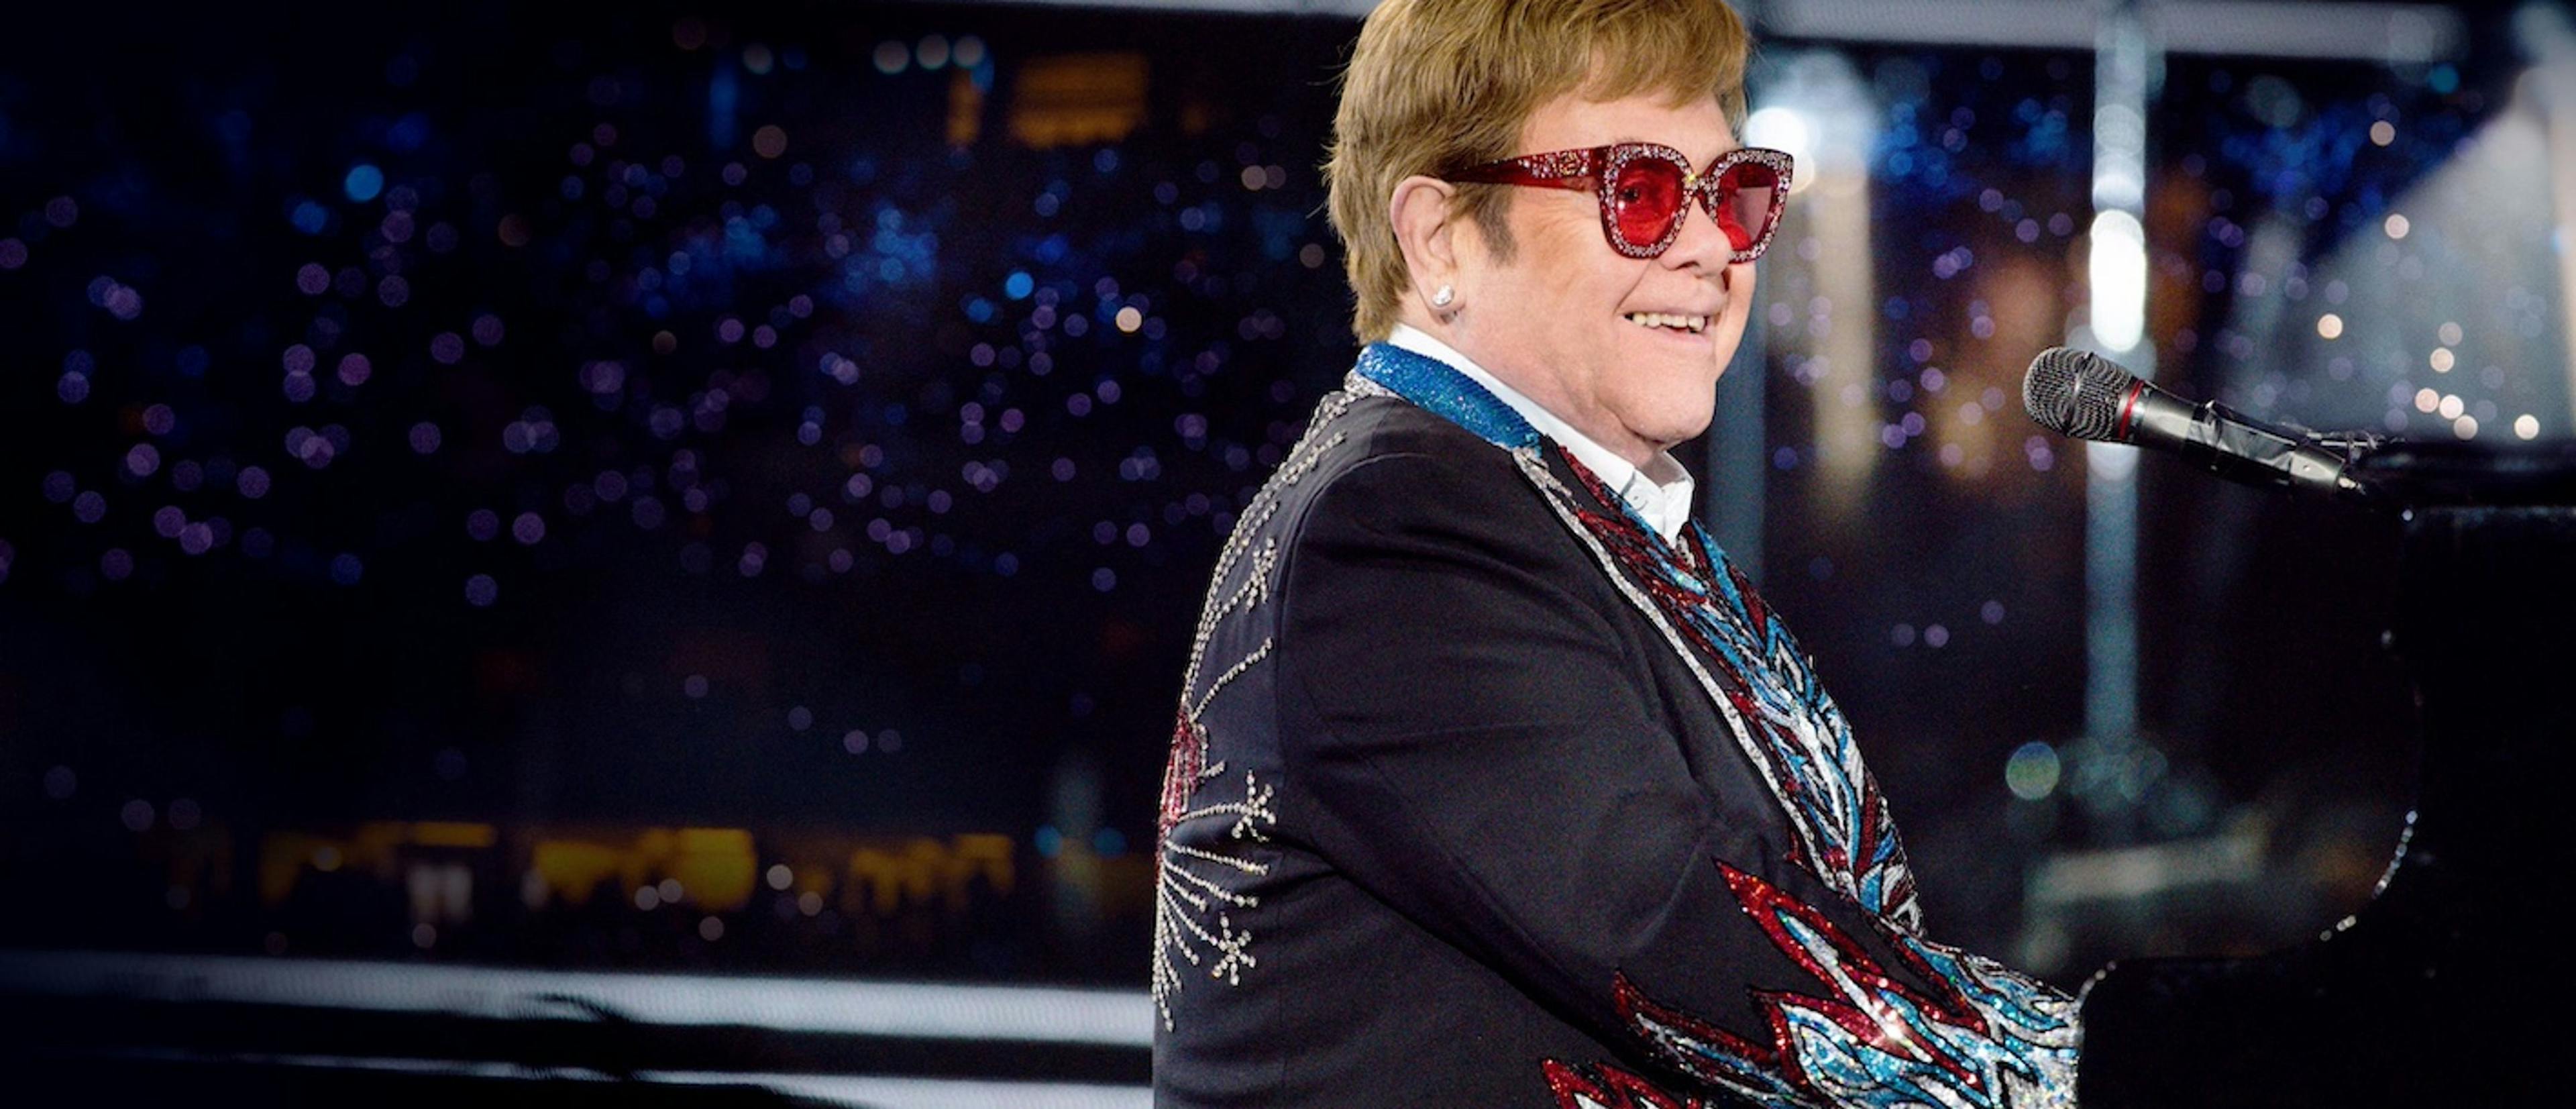 Su gira de despedida ha dado a Elton John el Emmy que necesitaba para convertirse en la 19ª persona en completar el EGOT